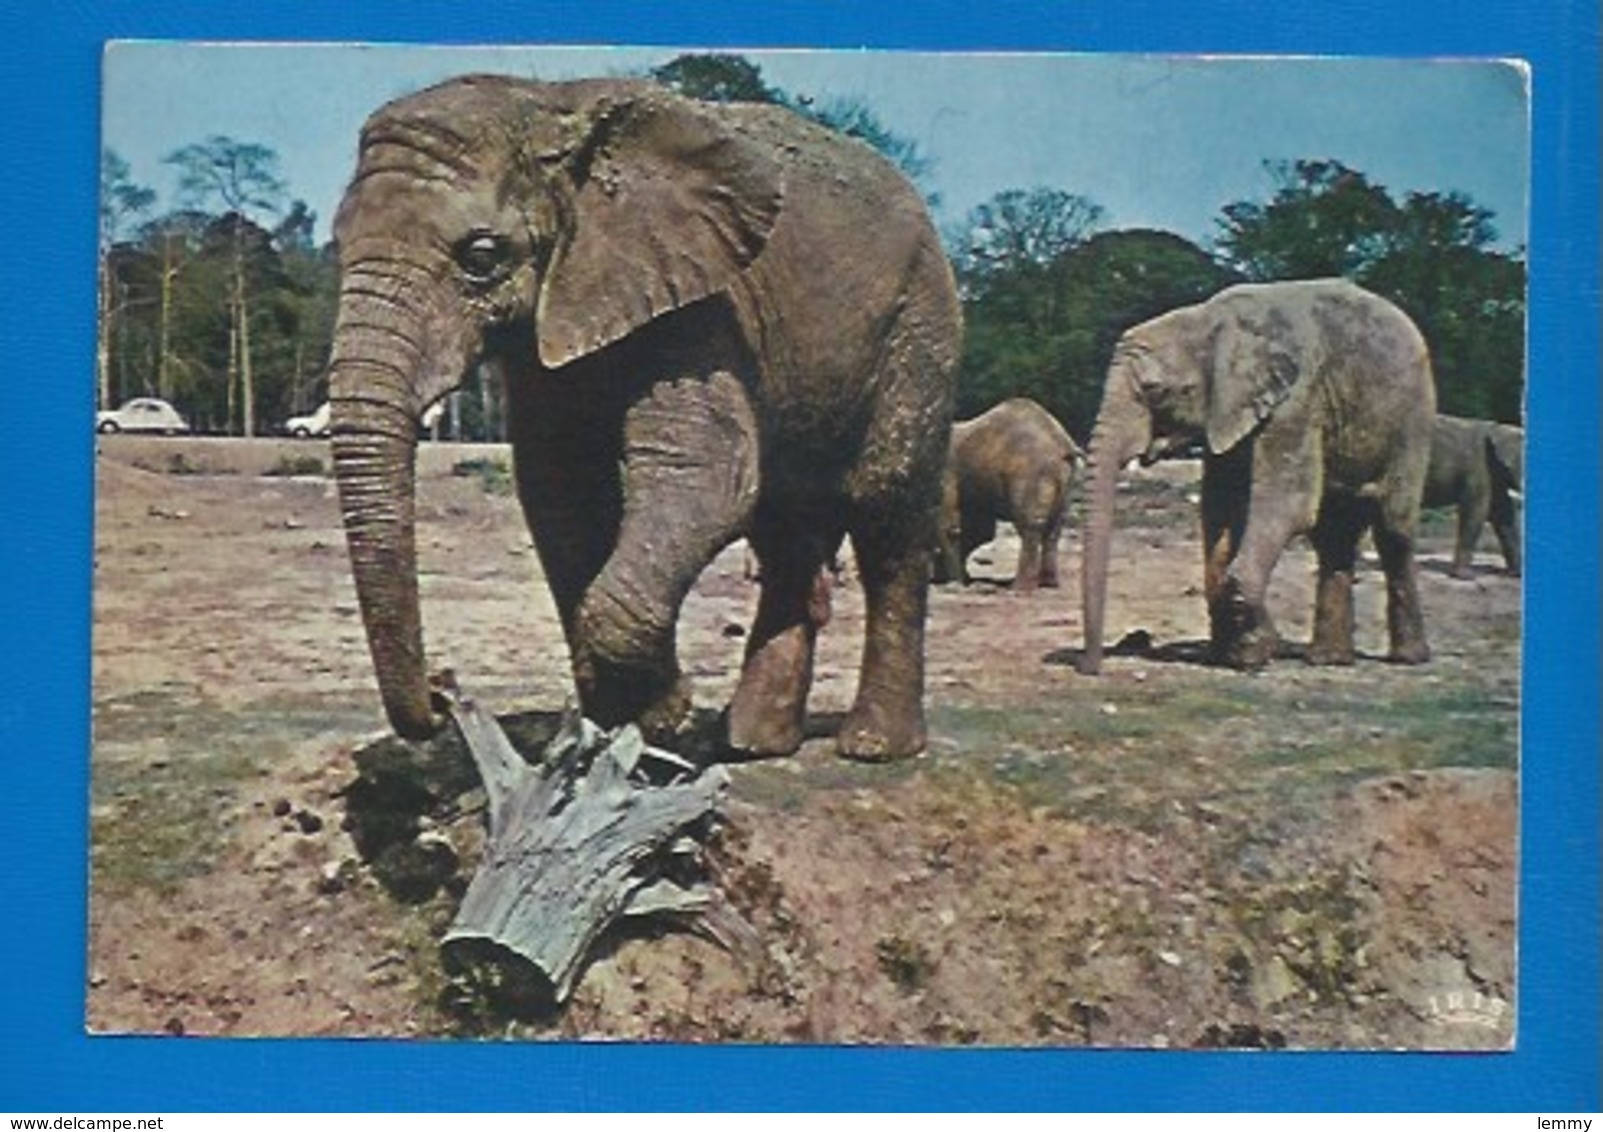 ANIMAUX - 78 - THOIRY - ÉLÉPHANTS EN LIBERTÉ - 1973 - Éléphants